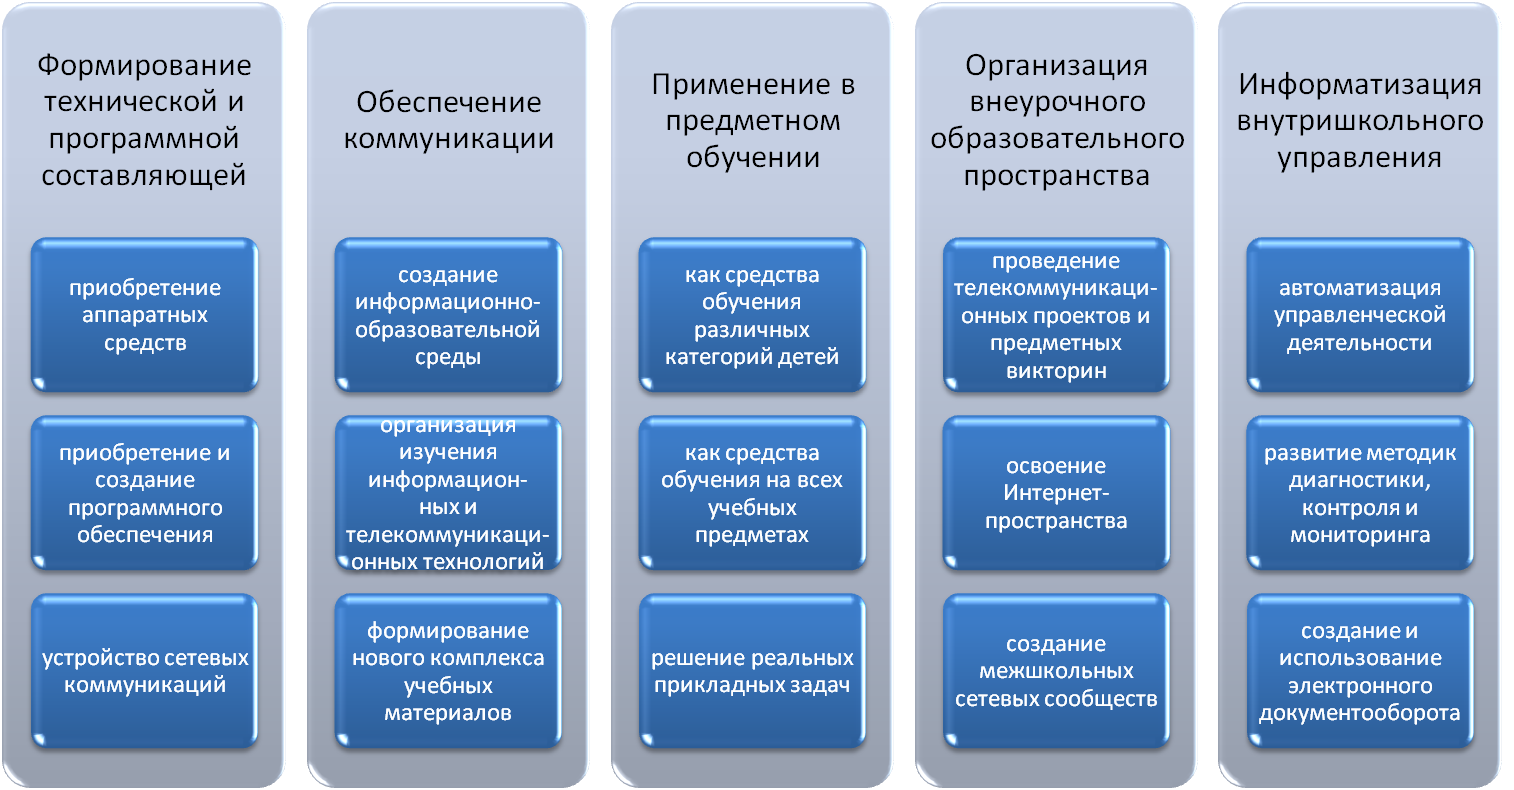 Направления развития информационных систем